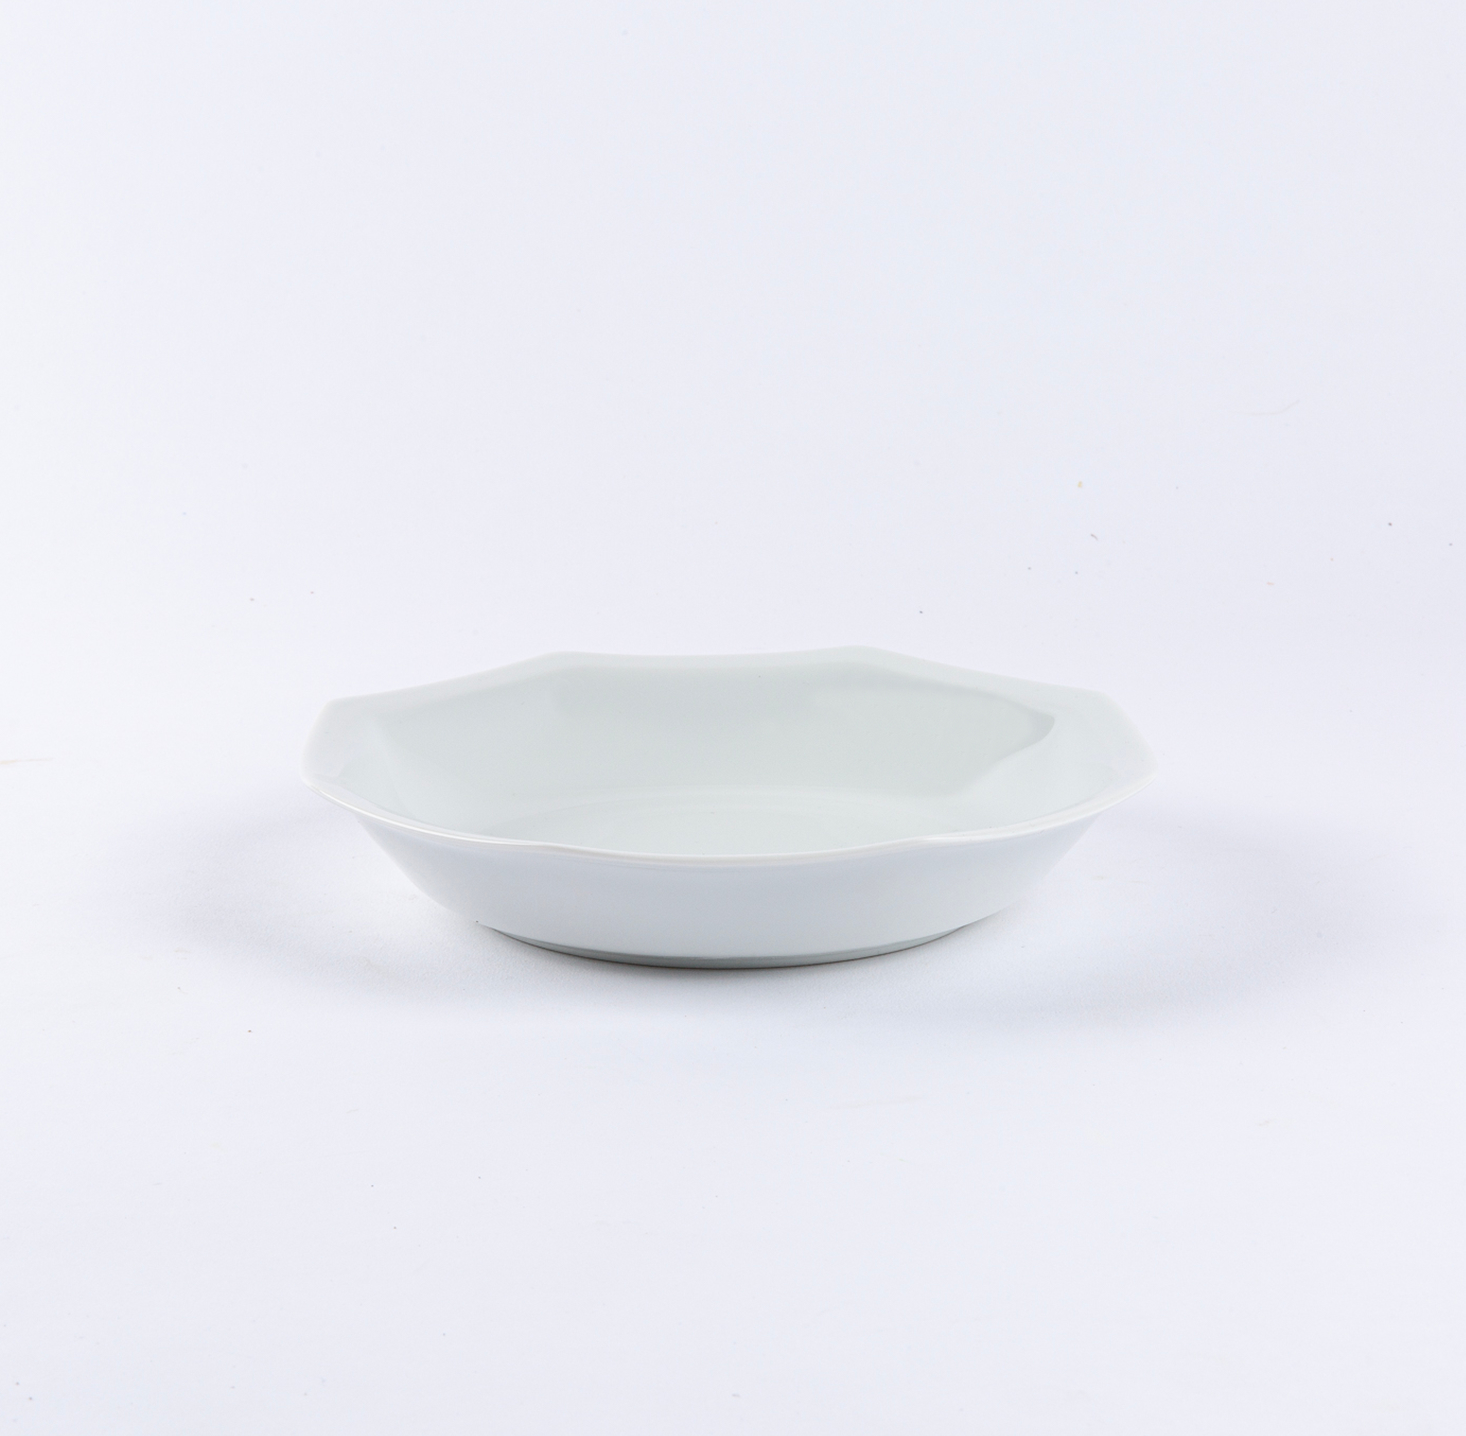 L’assiette Creuse En Porcelaine blanche de Limoges - Intemporelle